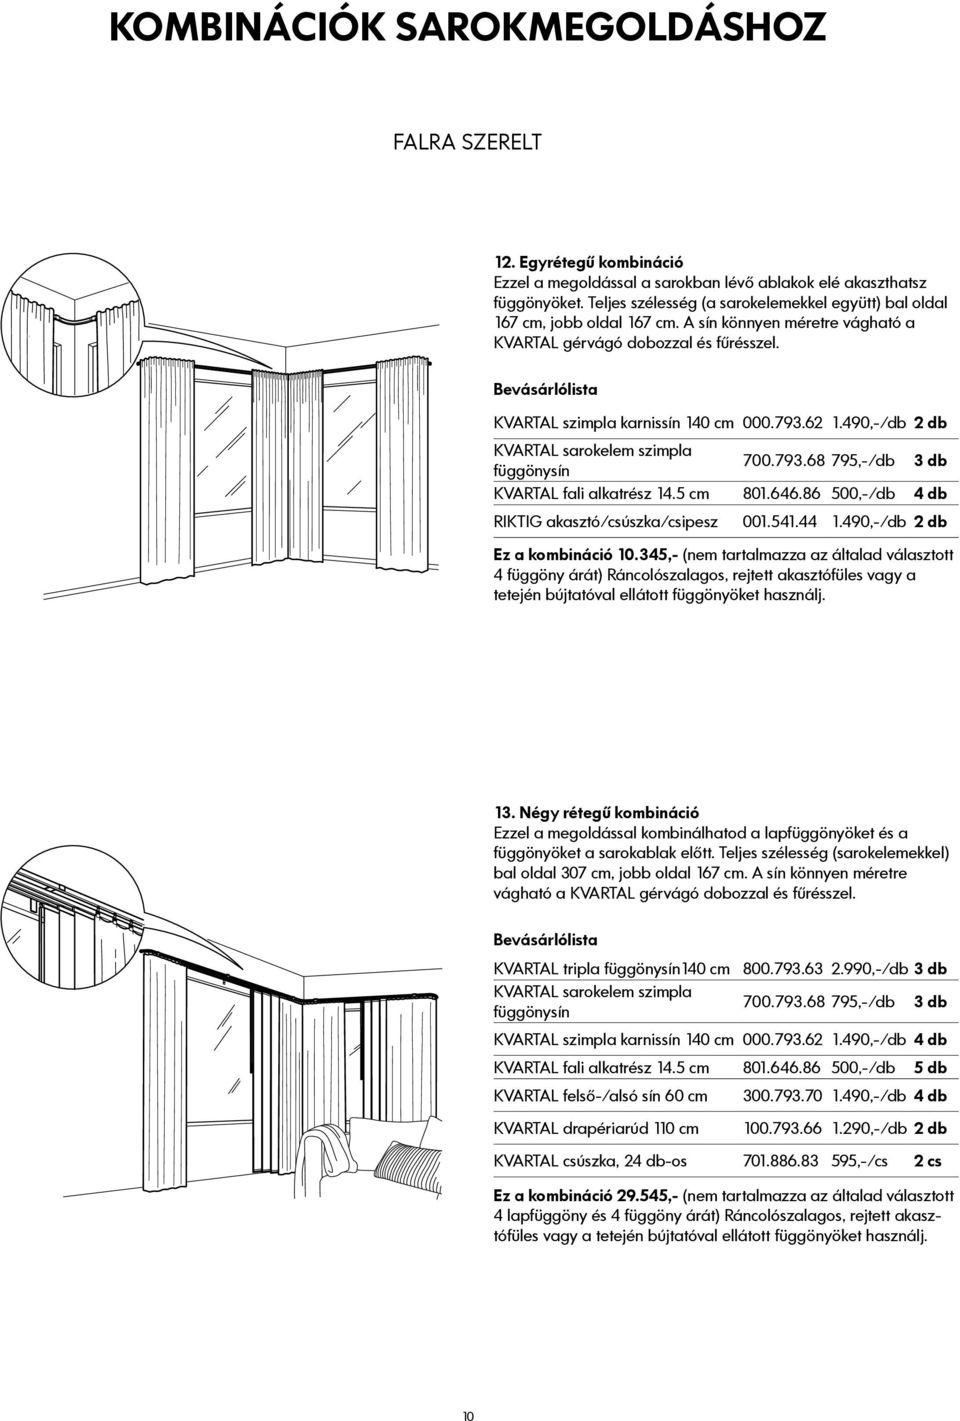 KVARTAL Függöny- és lapfüggöny felfüggesztő rendszer - PDF Ingyenes letöltés